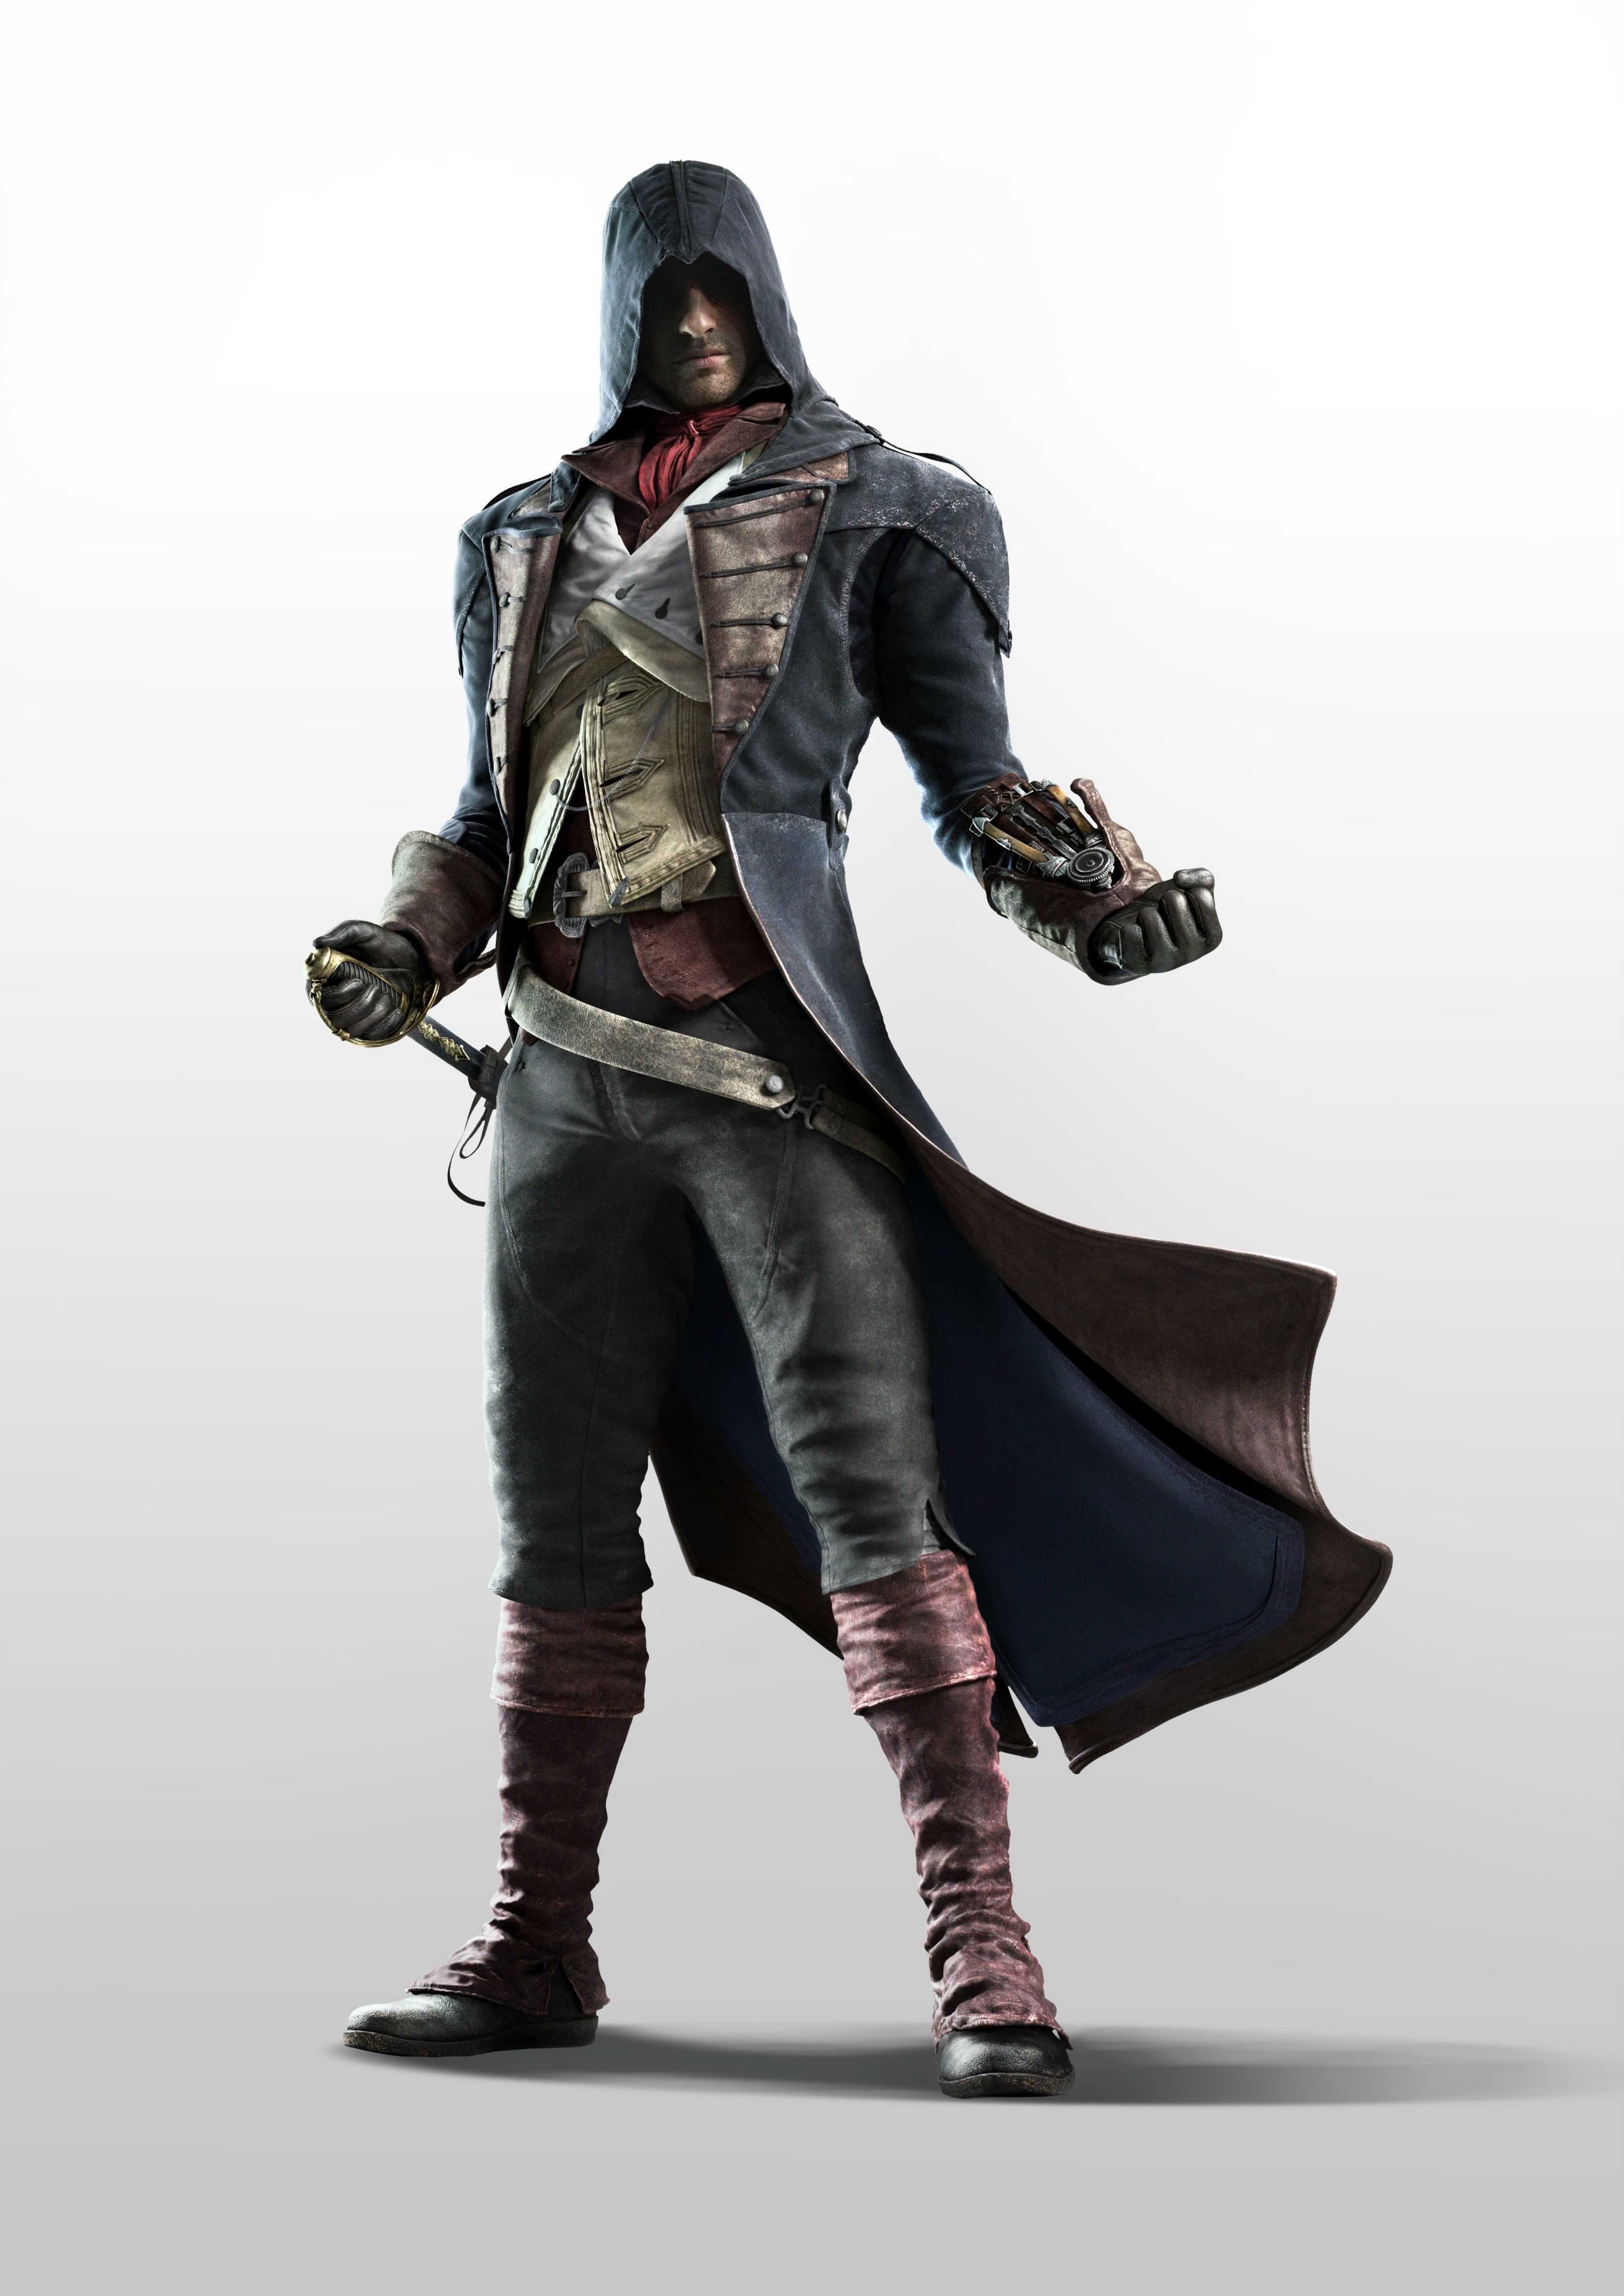 E3 2014: Assassin's Creed Unity no se puede desarrollar en Xbox 360 y PS3